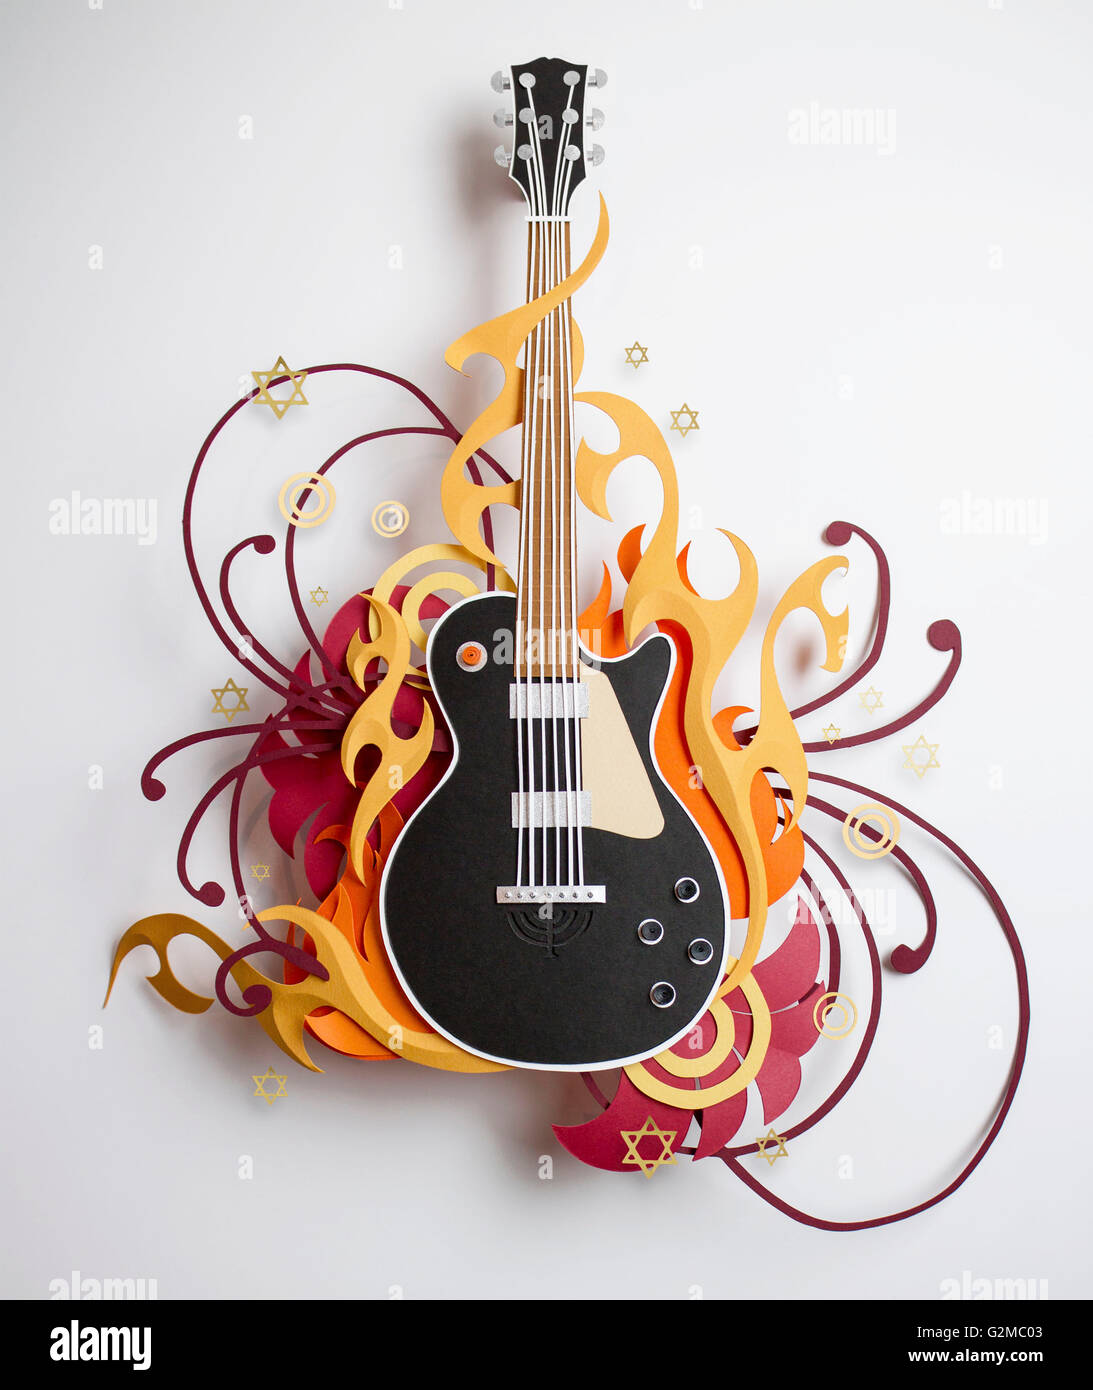 Estrellas y se arremolina alrededor de papel artesanal guitarra Foto de stock